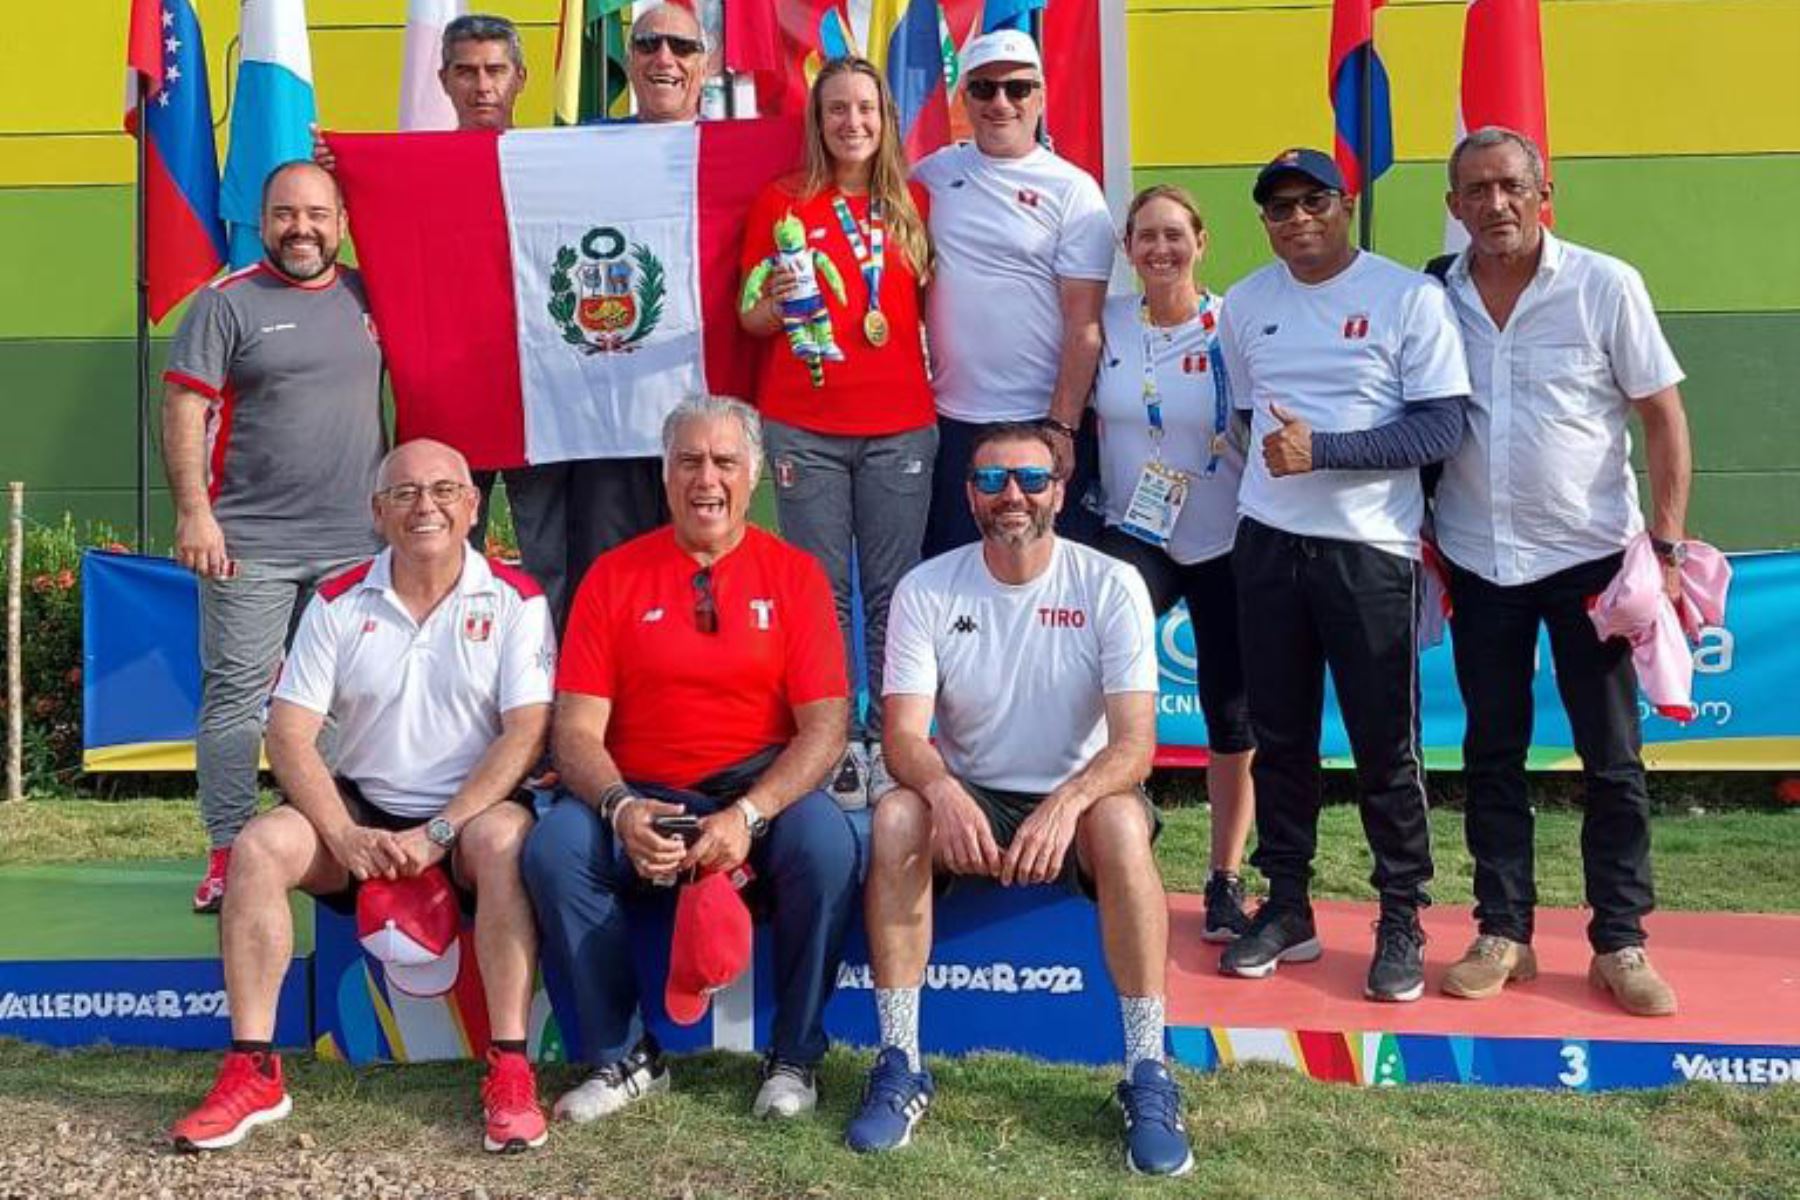 Perú confirma tercer lugar en los XIX Juegos Bolivarianos Valledupar 2022 con 97 medallas